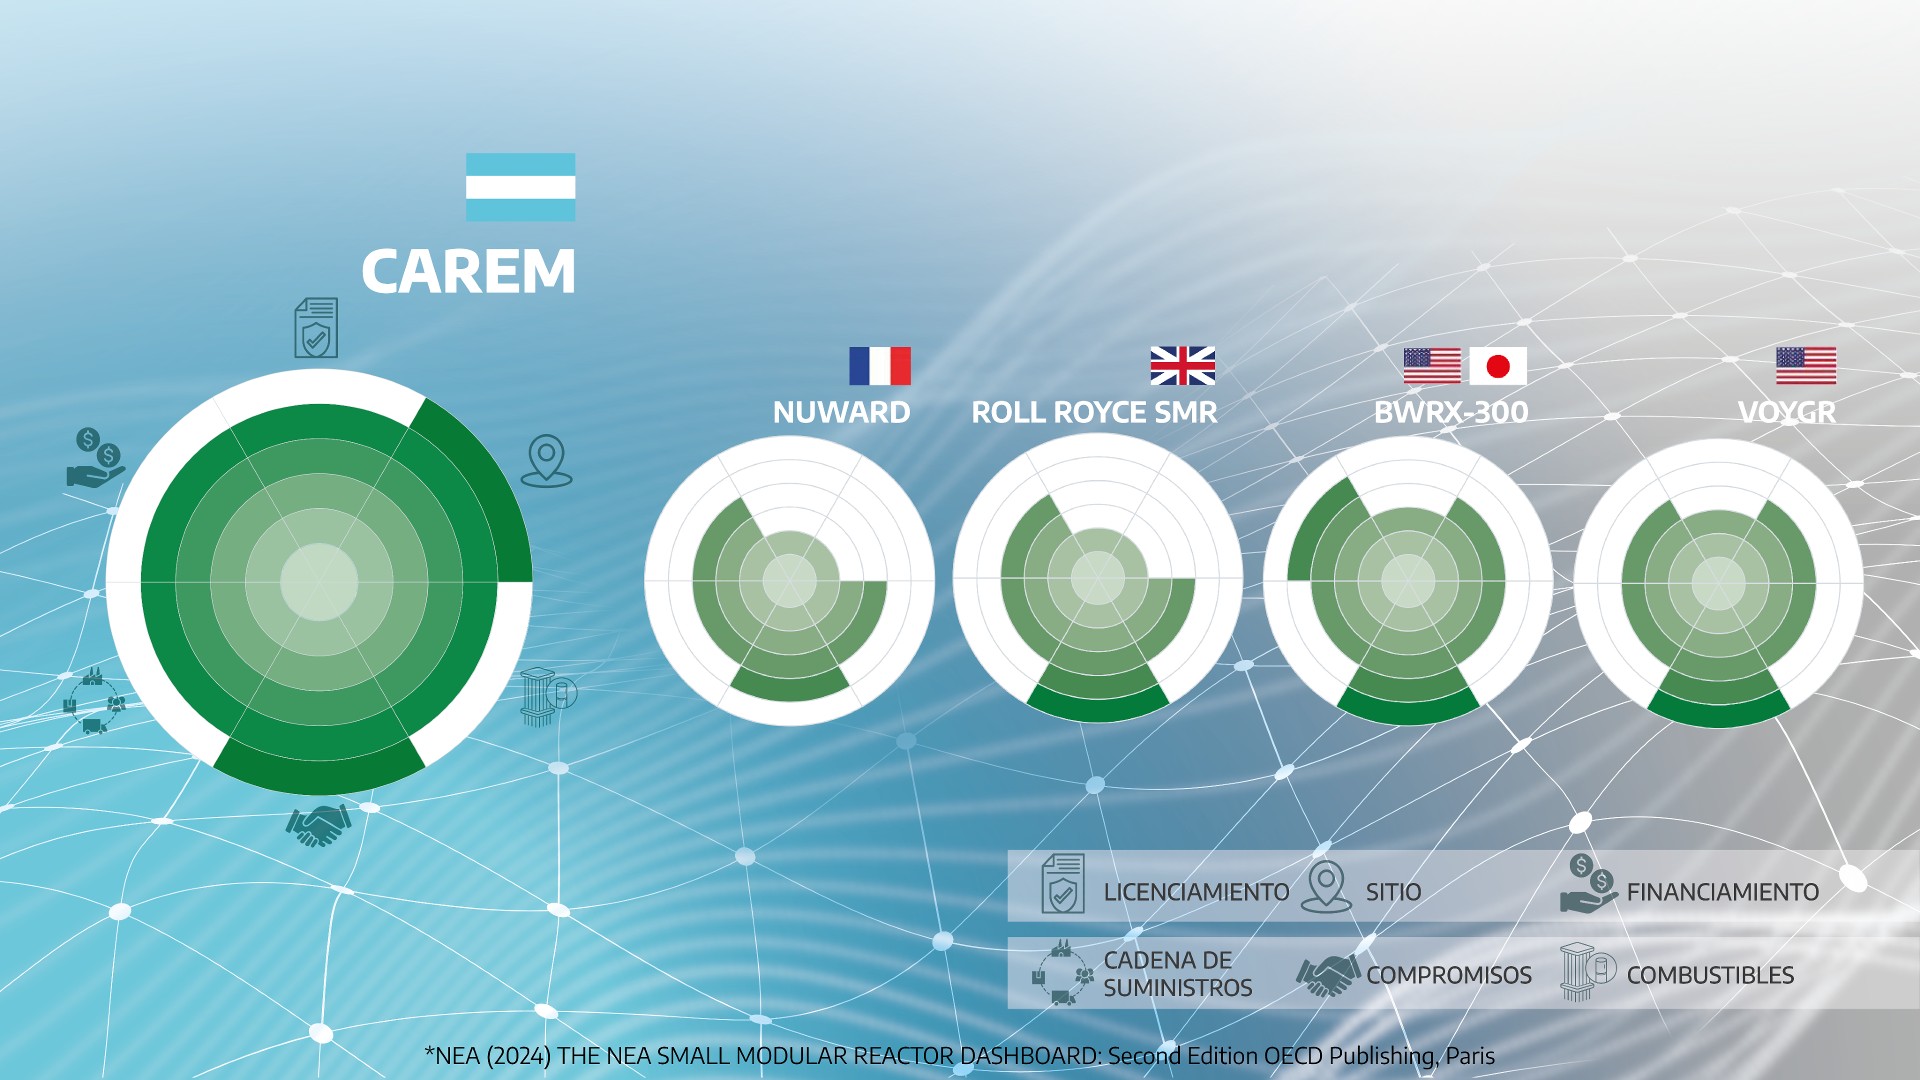 Desarrollo del proyecto CAREM según la Agencia de Energía Nuclear de la OCDE